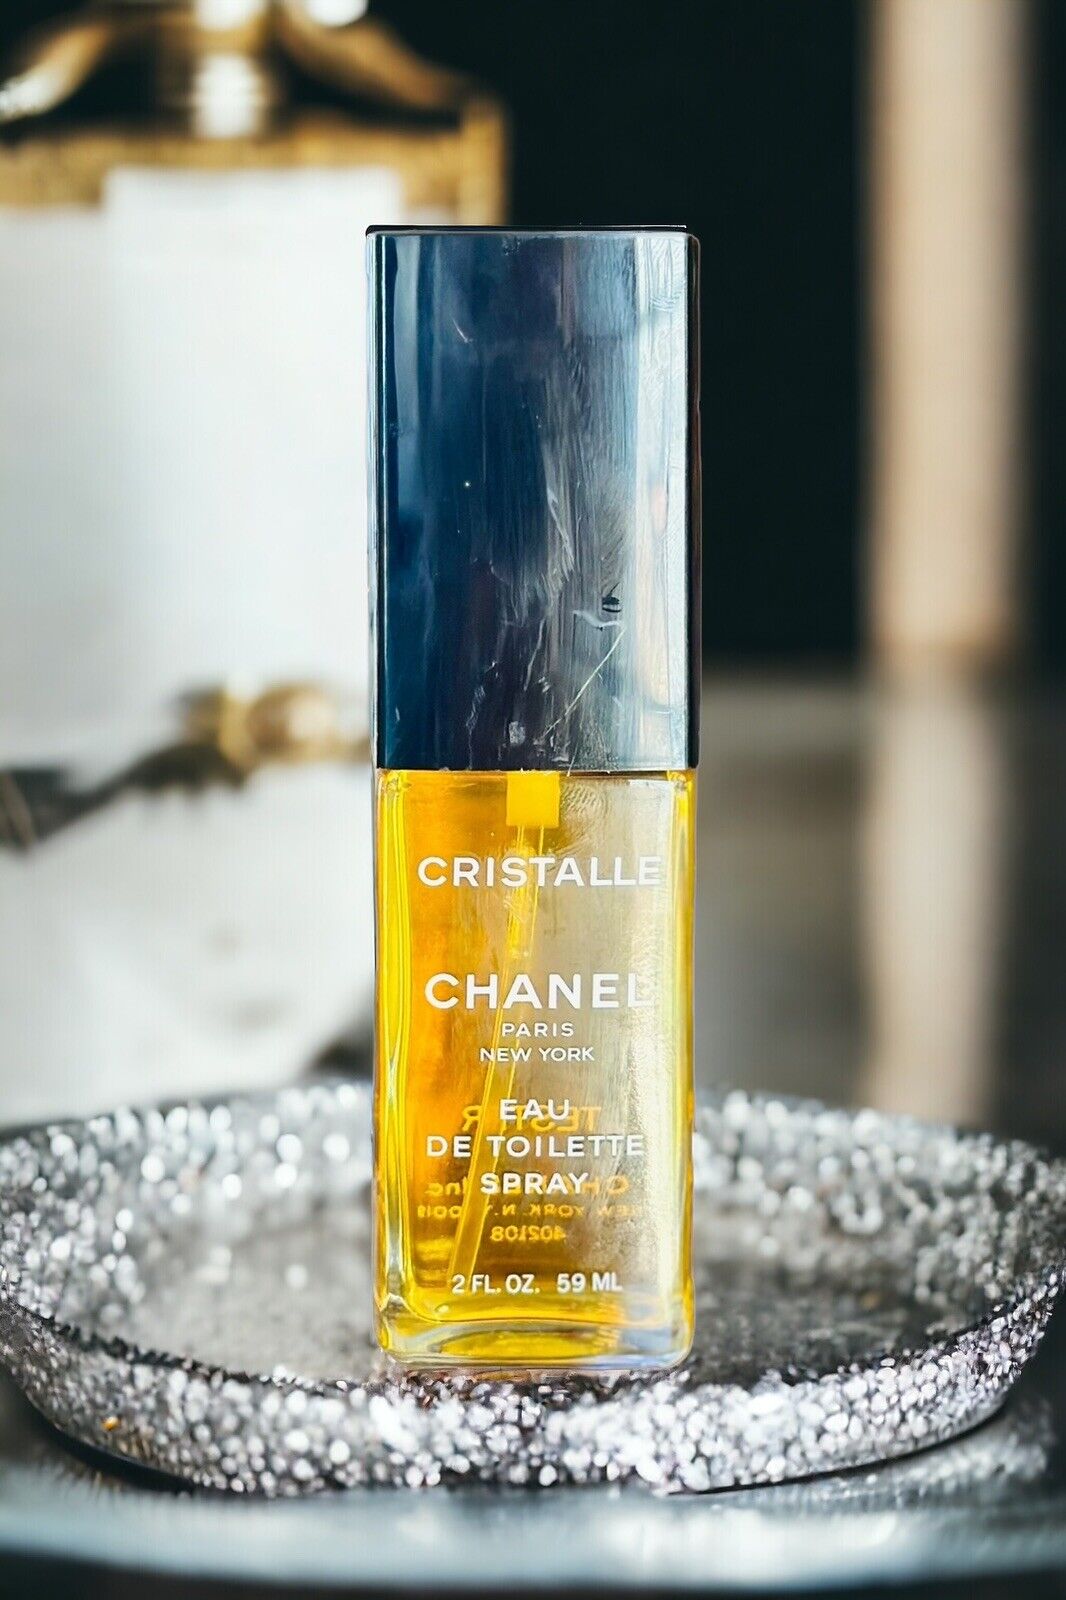 Cristalle Eau De Toilette Spray By Chanel Paris New York 59ml VINTAGE